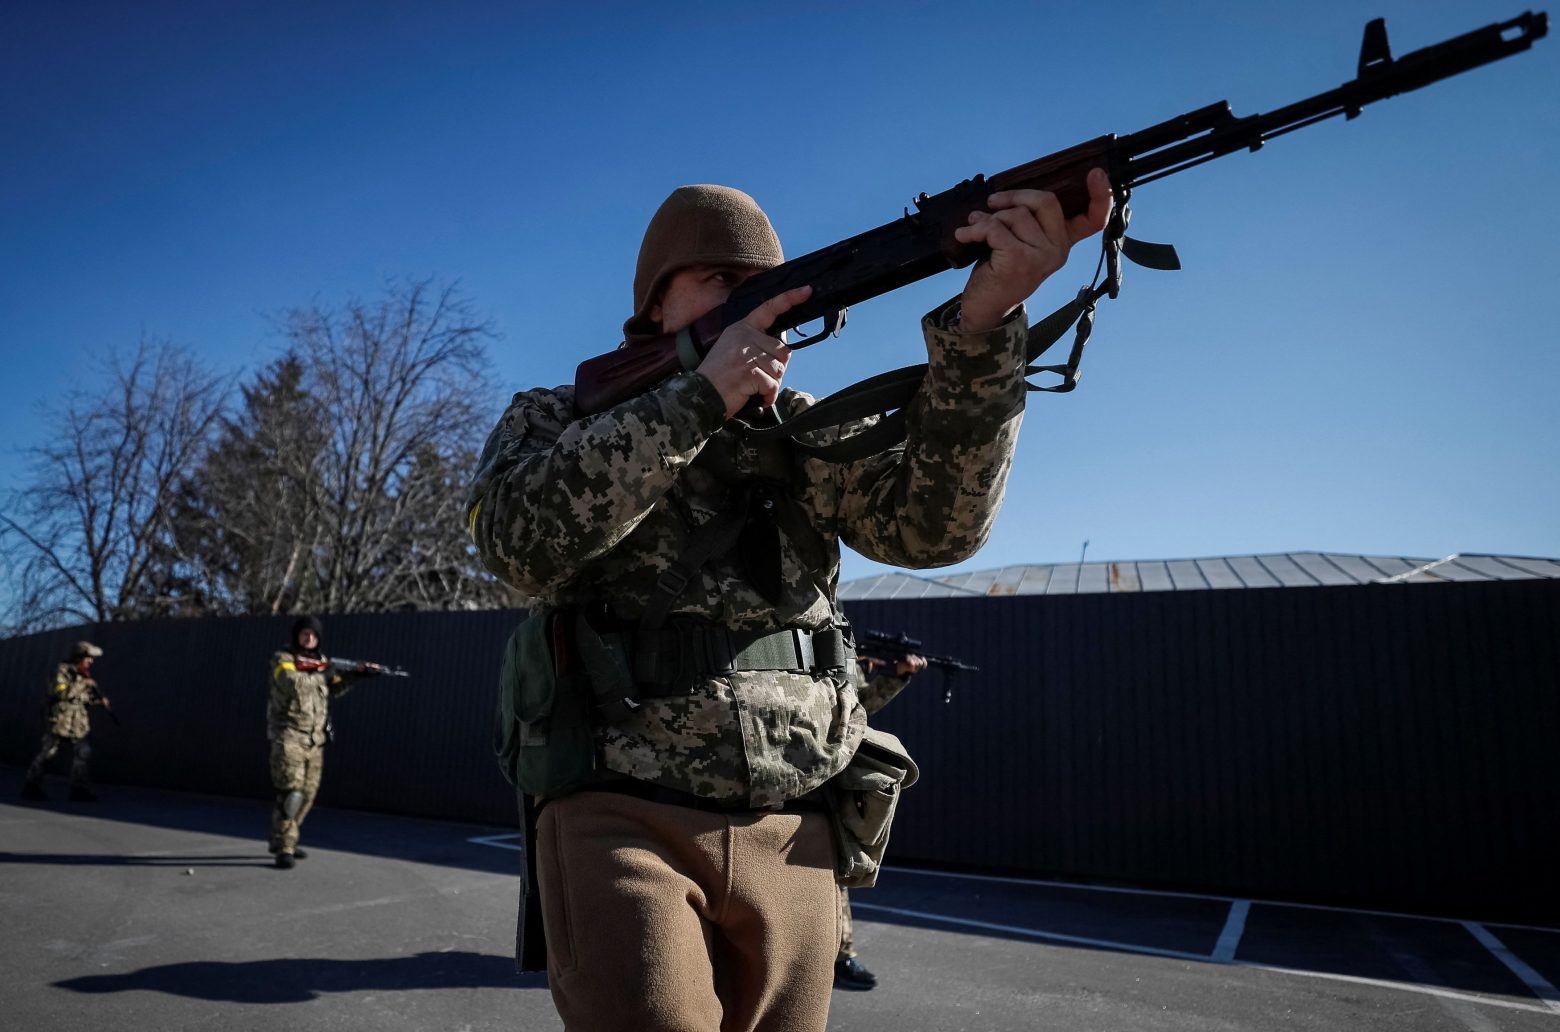 Πόλεμος στην Ουκρανία: Μπορεί η αποστολή οπλισμού να φέρει το ΝΑΤΟ σε ευθεία σύγκρουση με τη Ρωσία